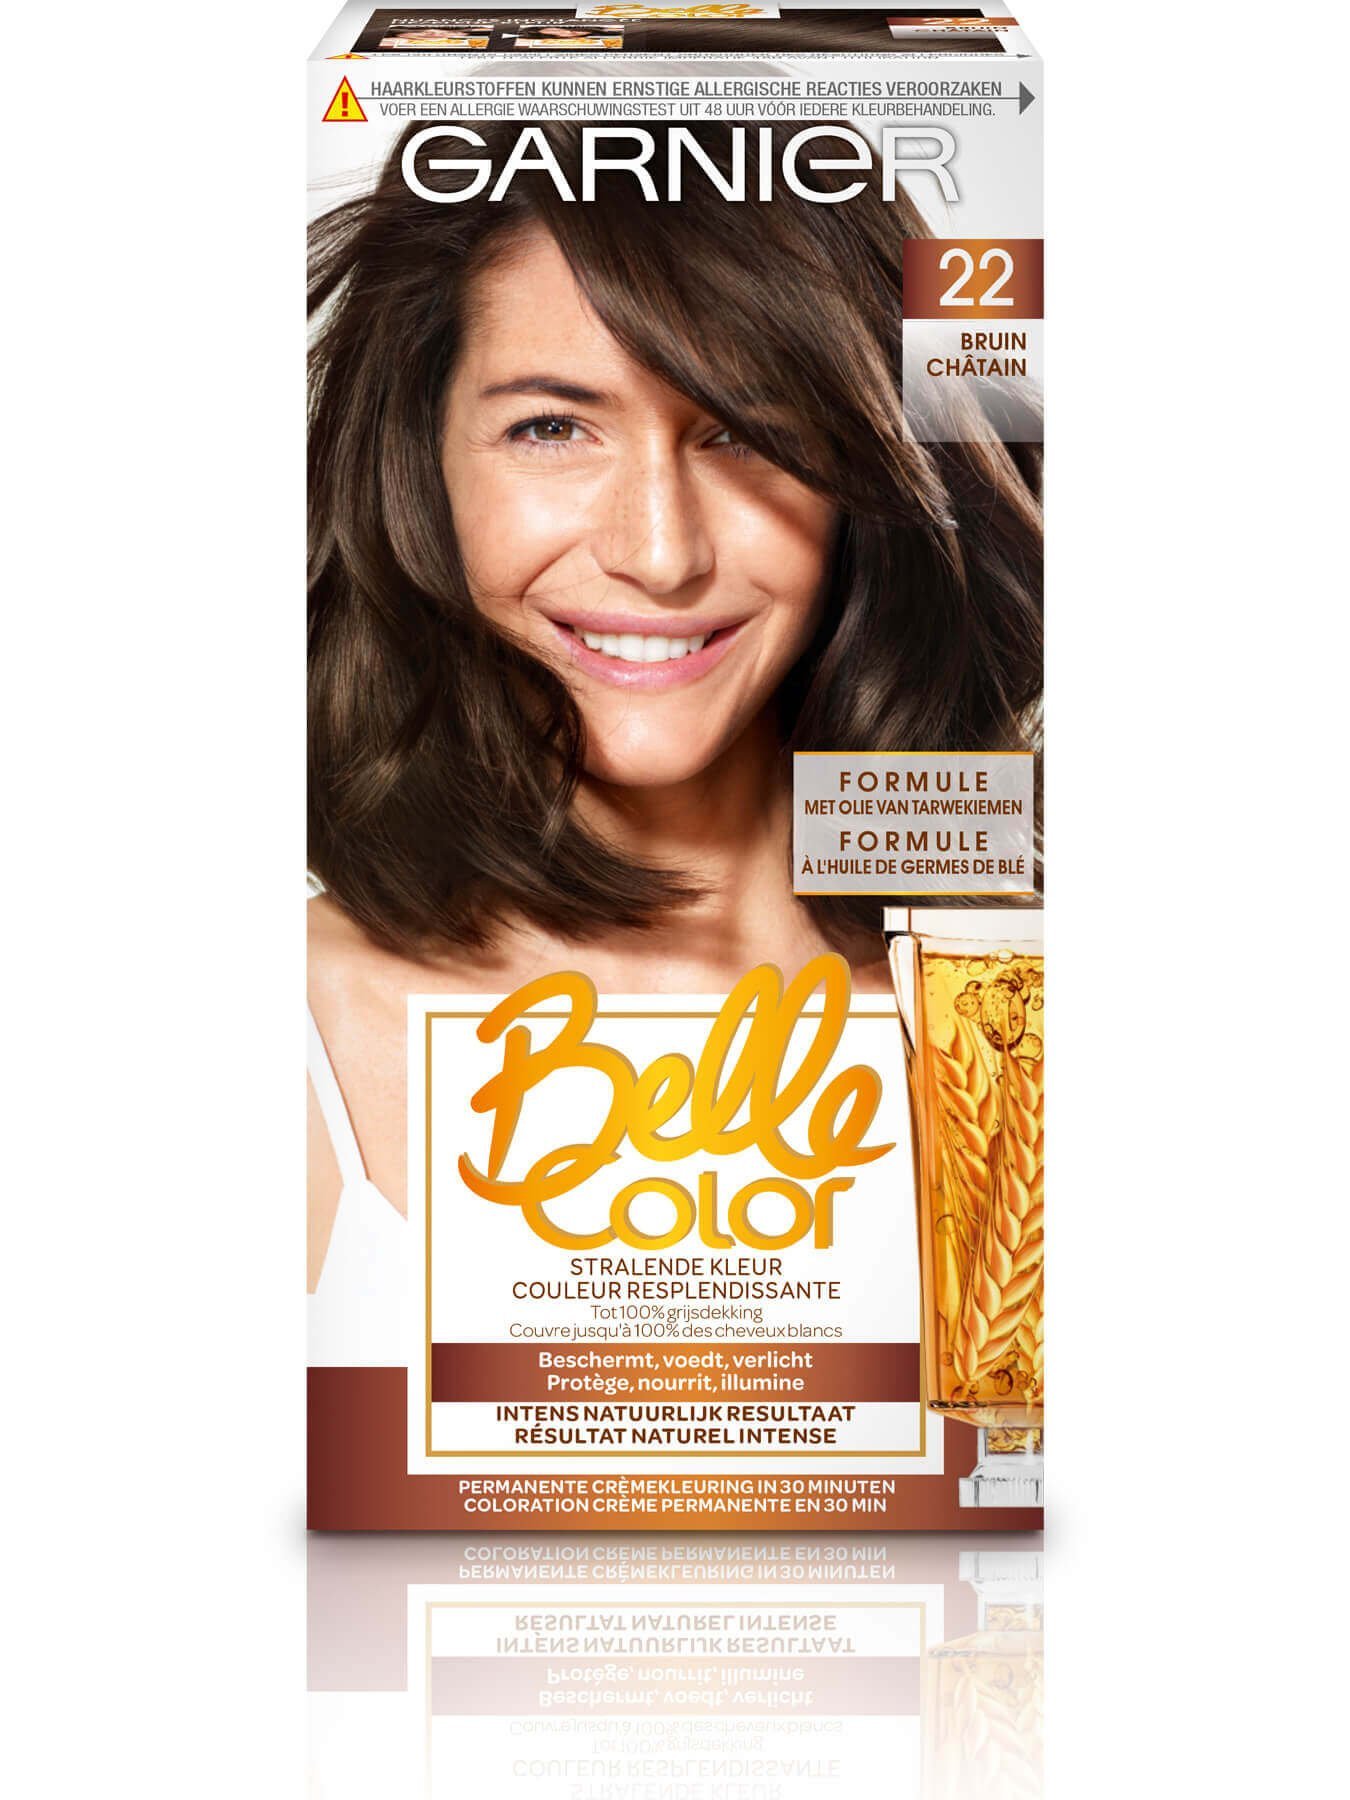 Belle color 2019 face 22 BIL